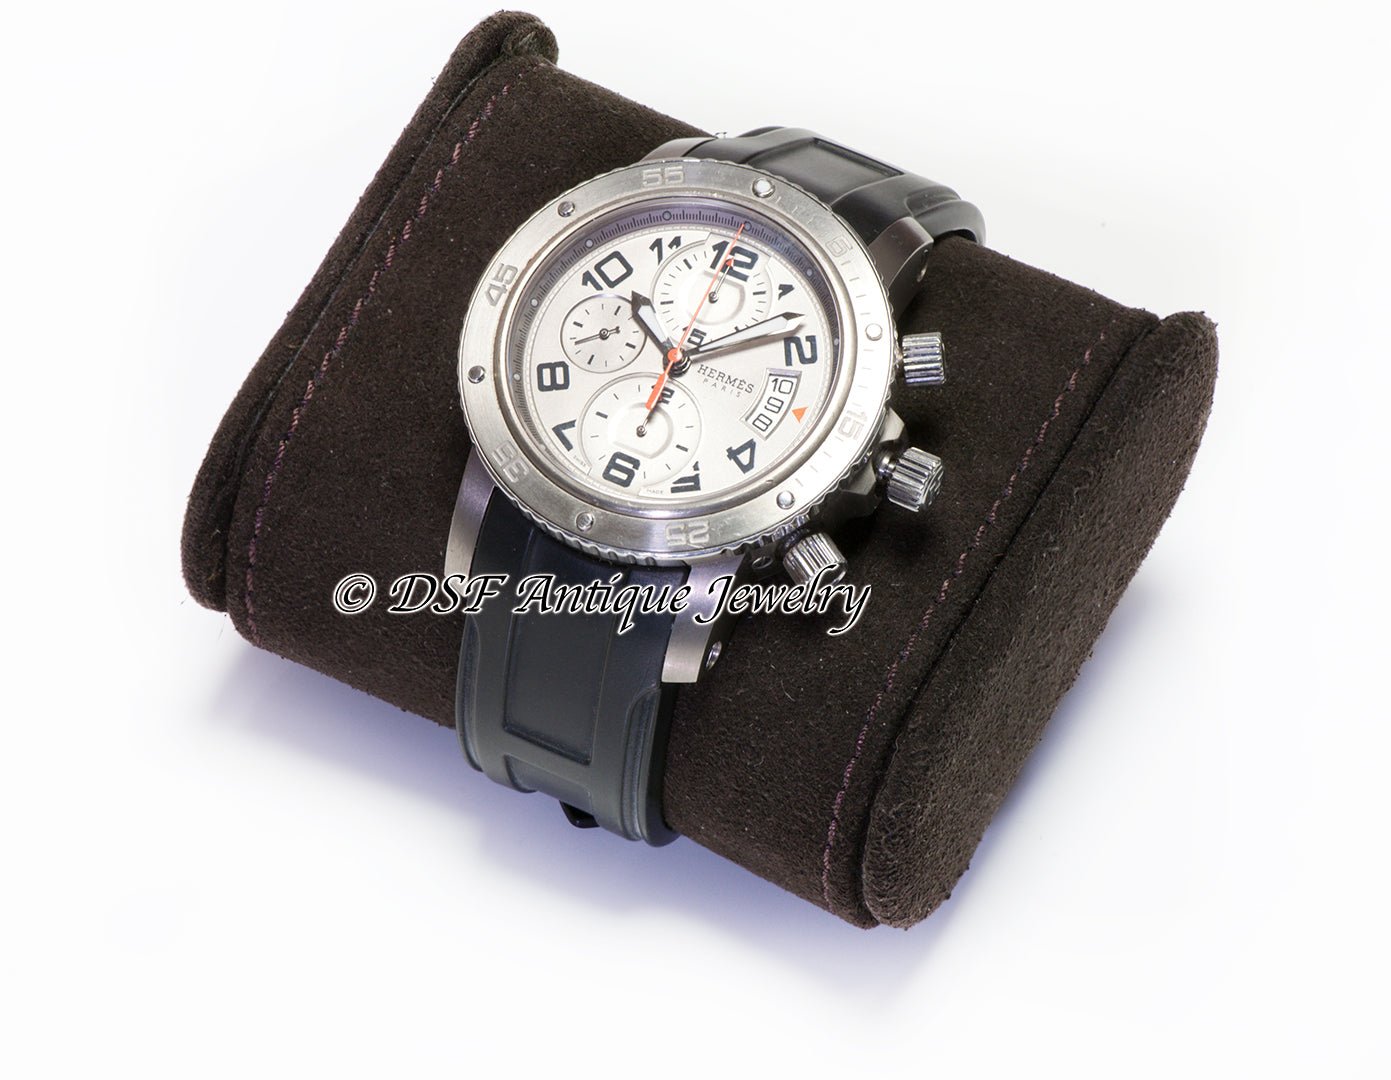 Hermes Clipper Chronograph Titanium Automatic Diver Men's Watch CP2.941